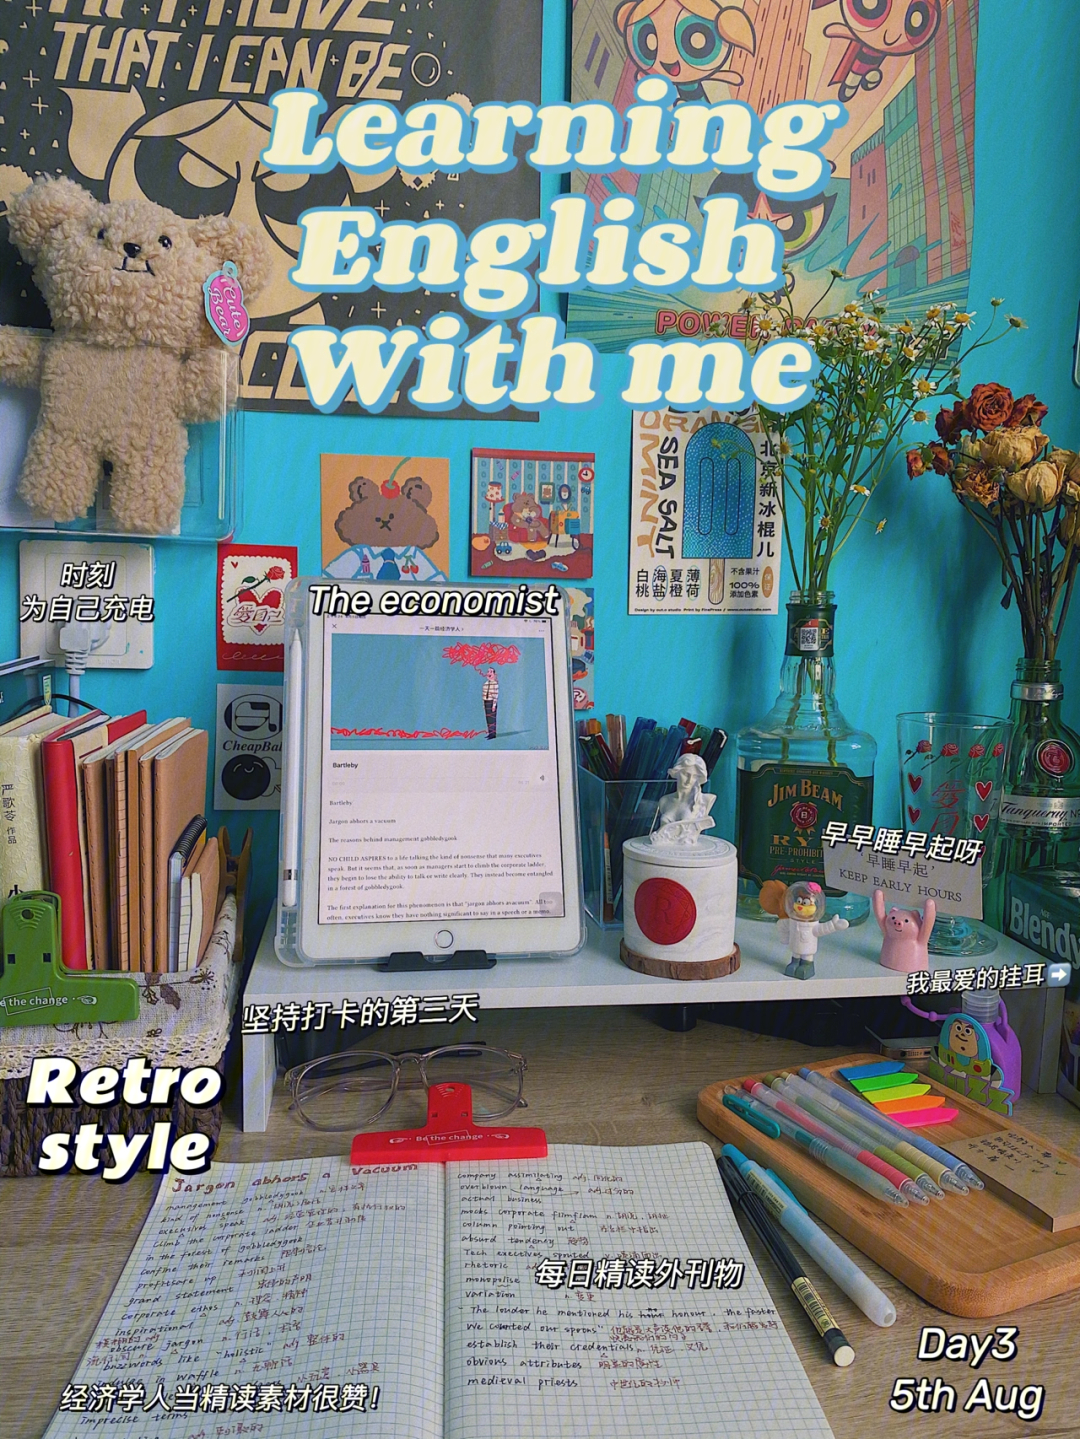 书桌用英语怎么写图片